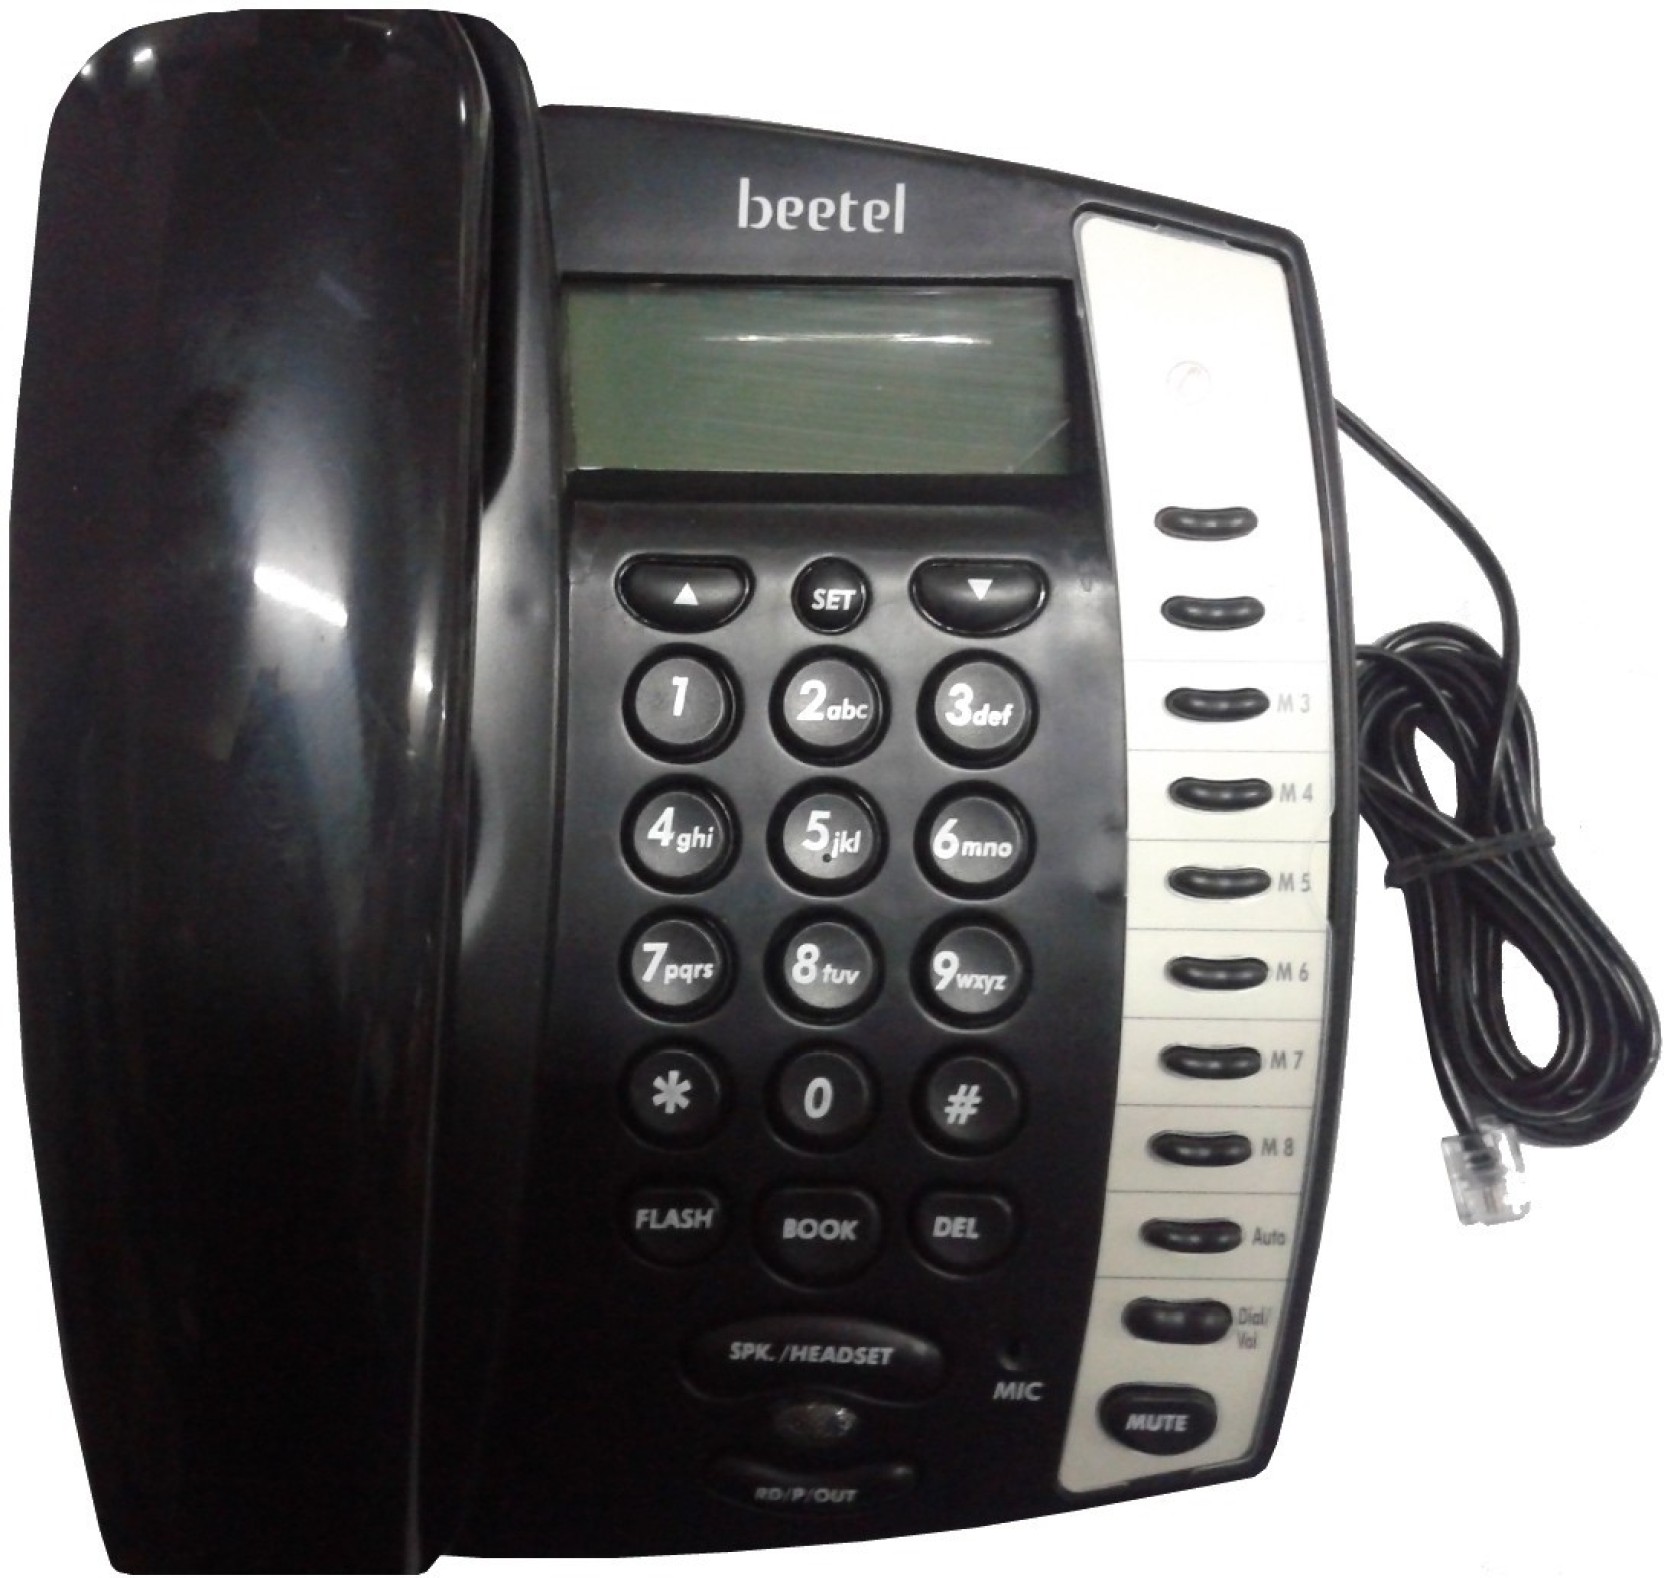 beetel landline phone user manual